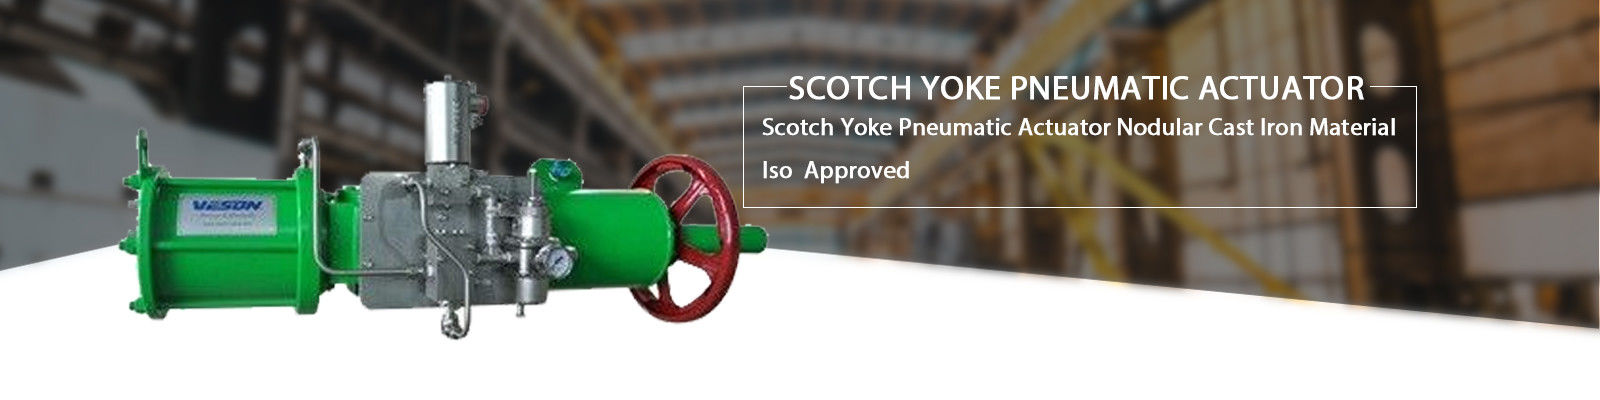 Pneumatic Actuator Scotch Yoke